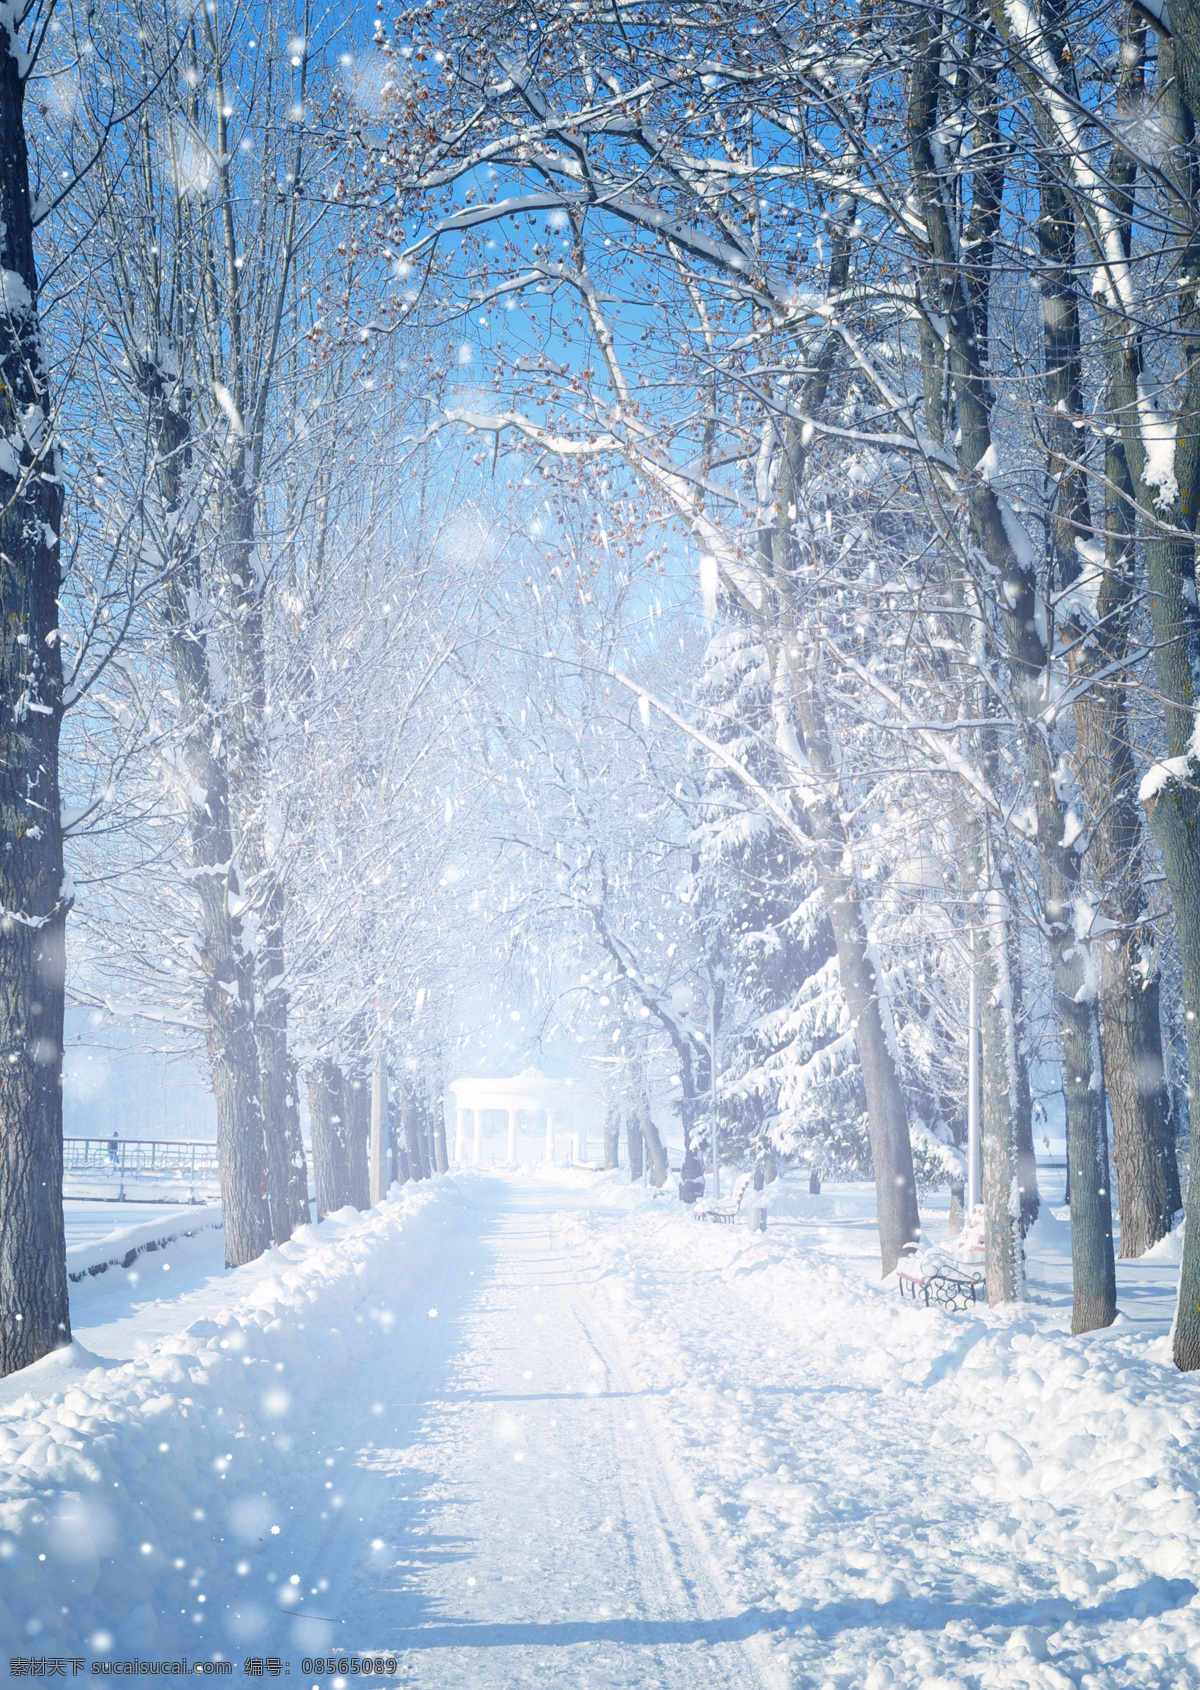 冬日 积雪 下 道路 冬天风景 雪景 道路交通 树林树木 自然风景 自然景观